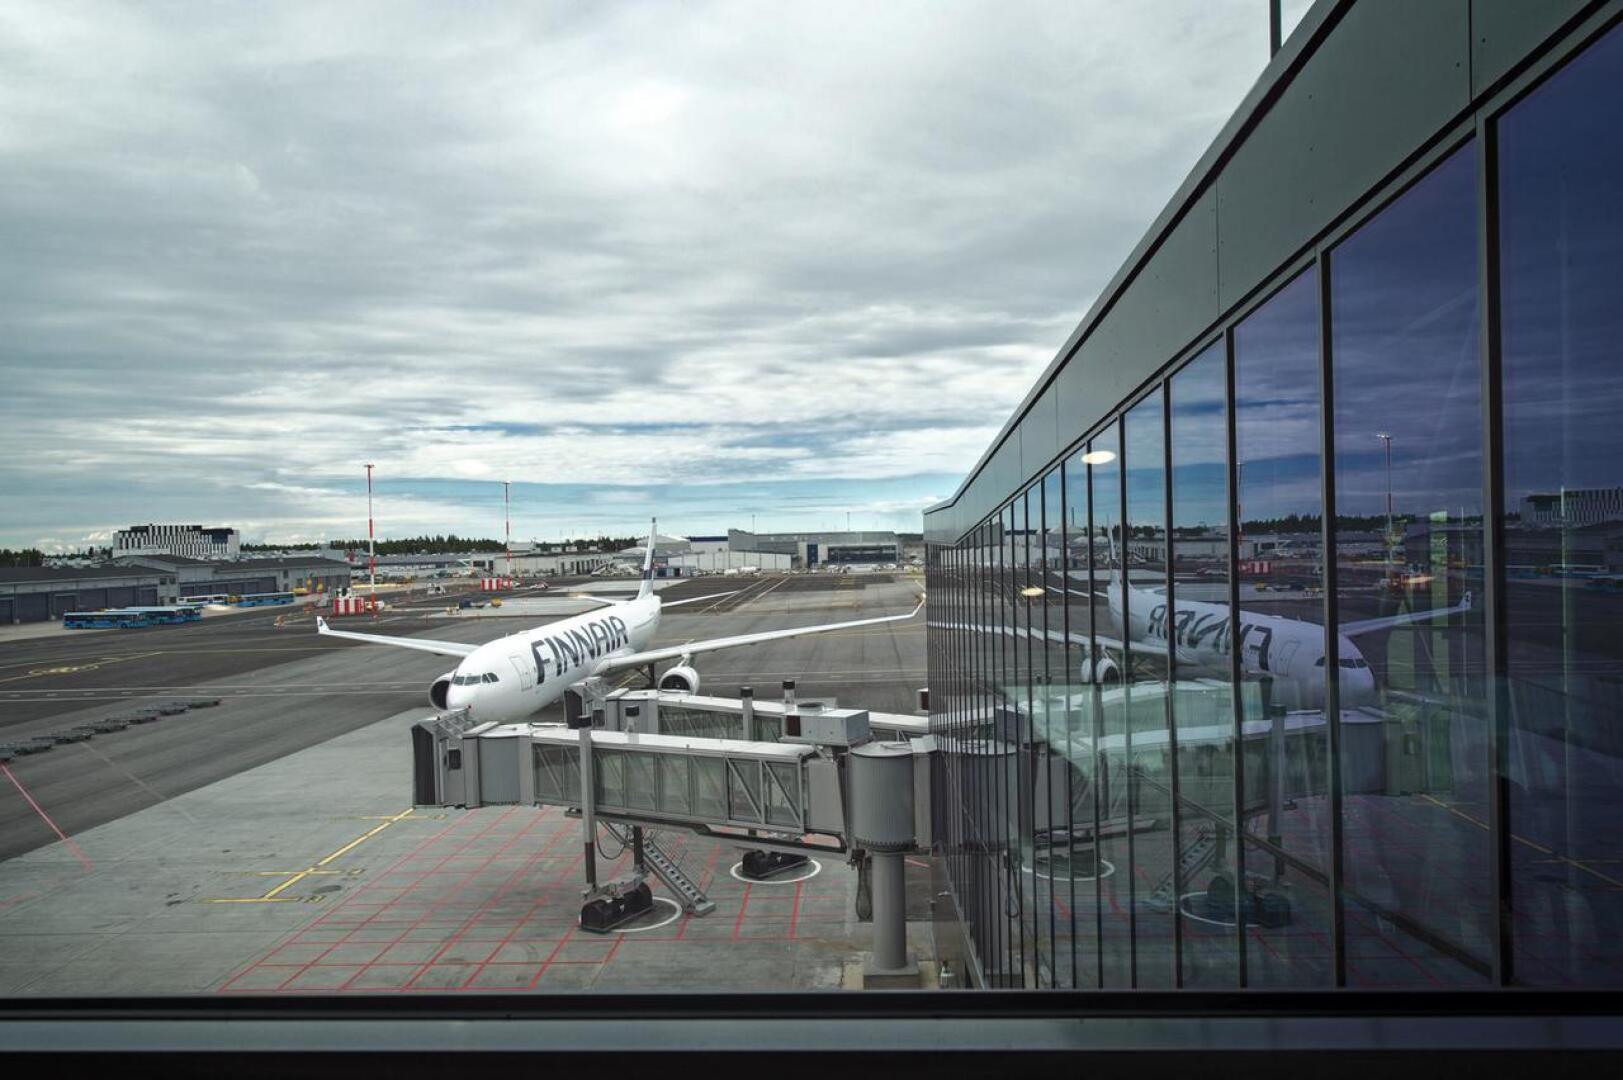 Finnairin kone ilmoitti lennon aikana, että koneen nokkatelineessä on vikaa. Kyseessä on sentyyppinen vika, josta tehdään prosessinmukaisesti aina hälytys. Kuvan kone ei liity tapaukseen (arkistokuva).